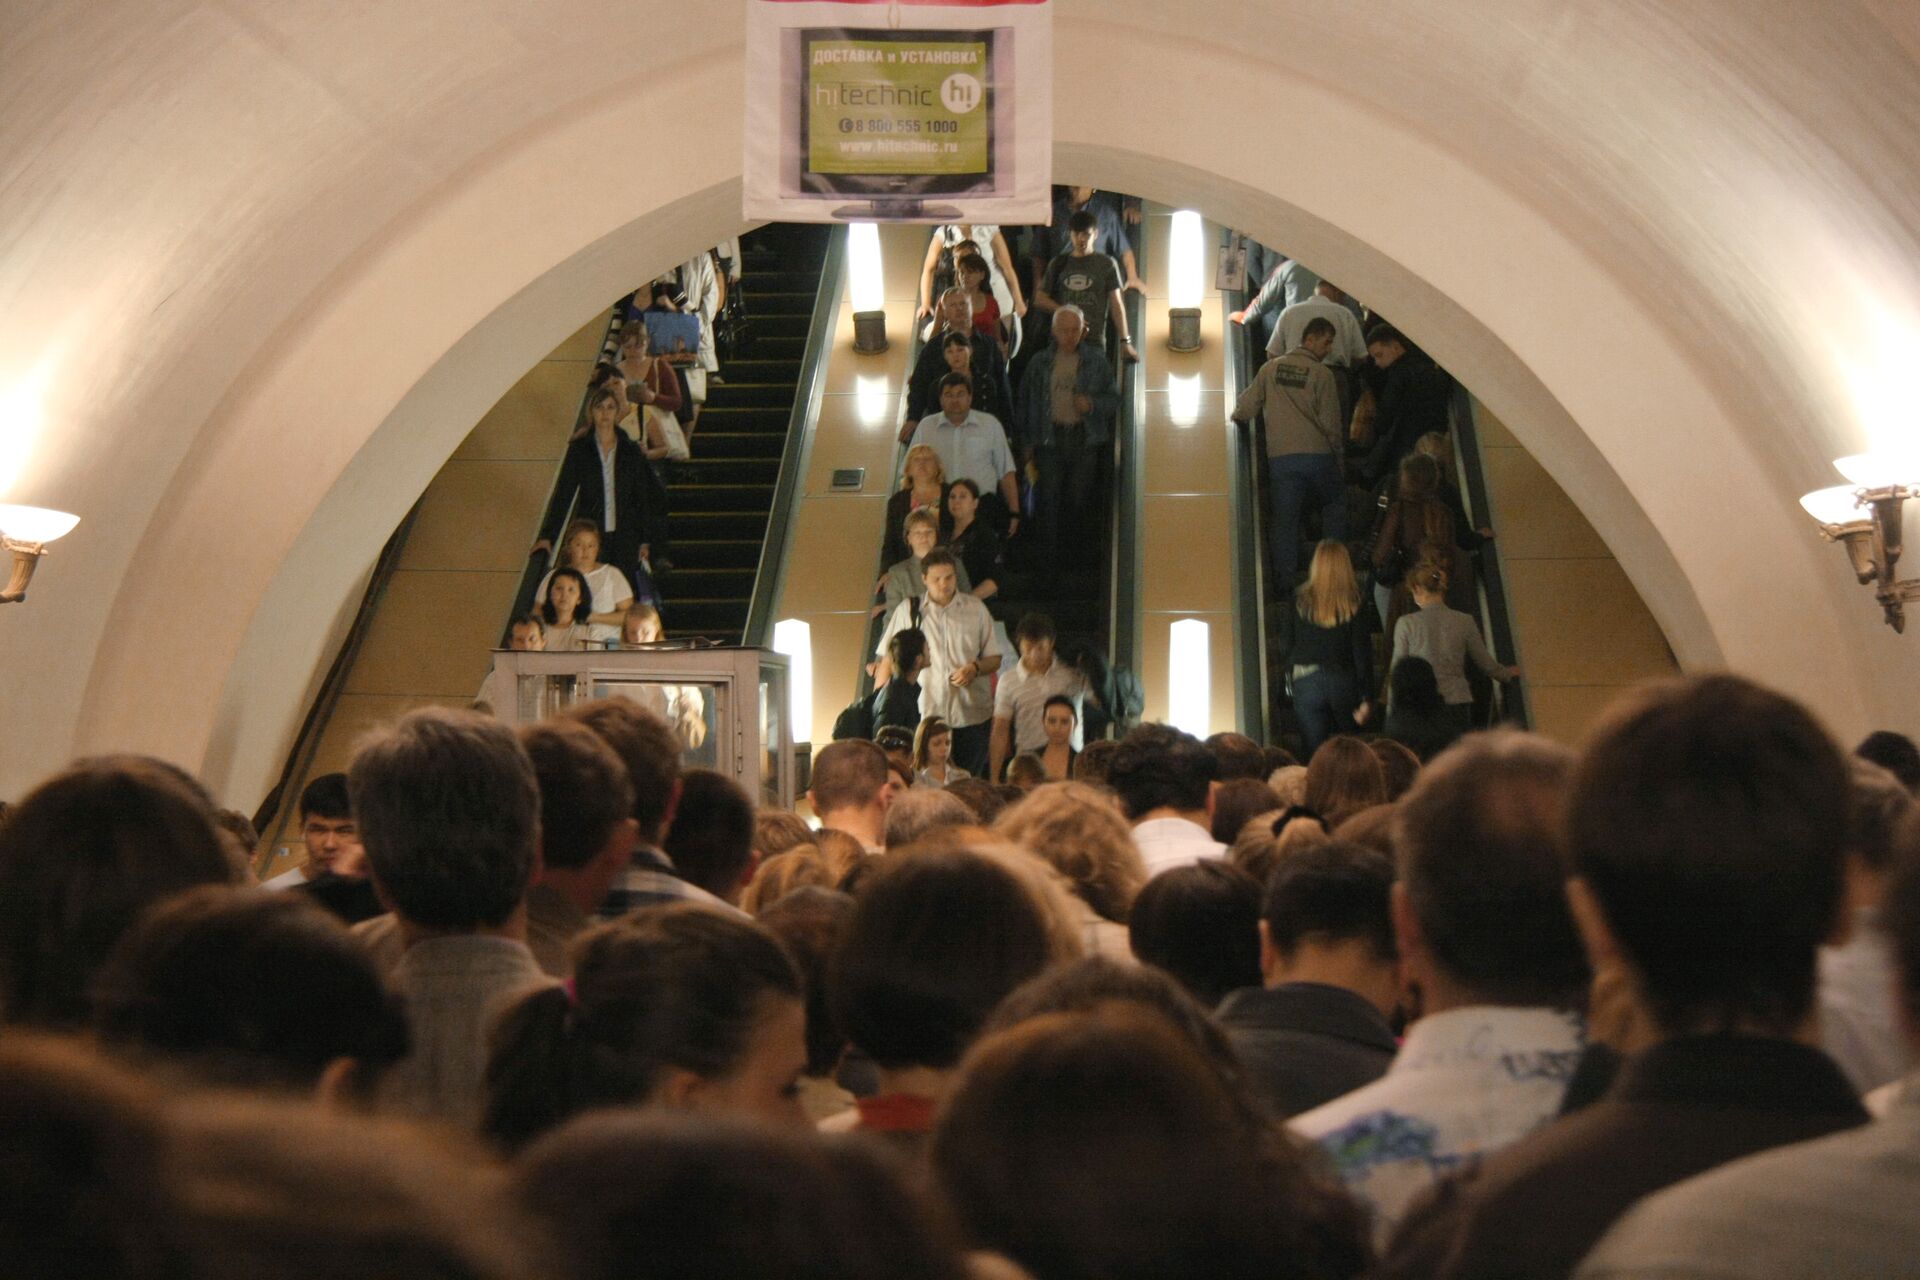 метро выхино в час пик